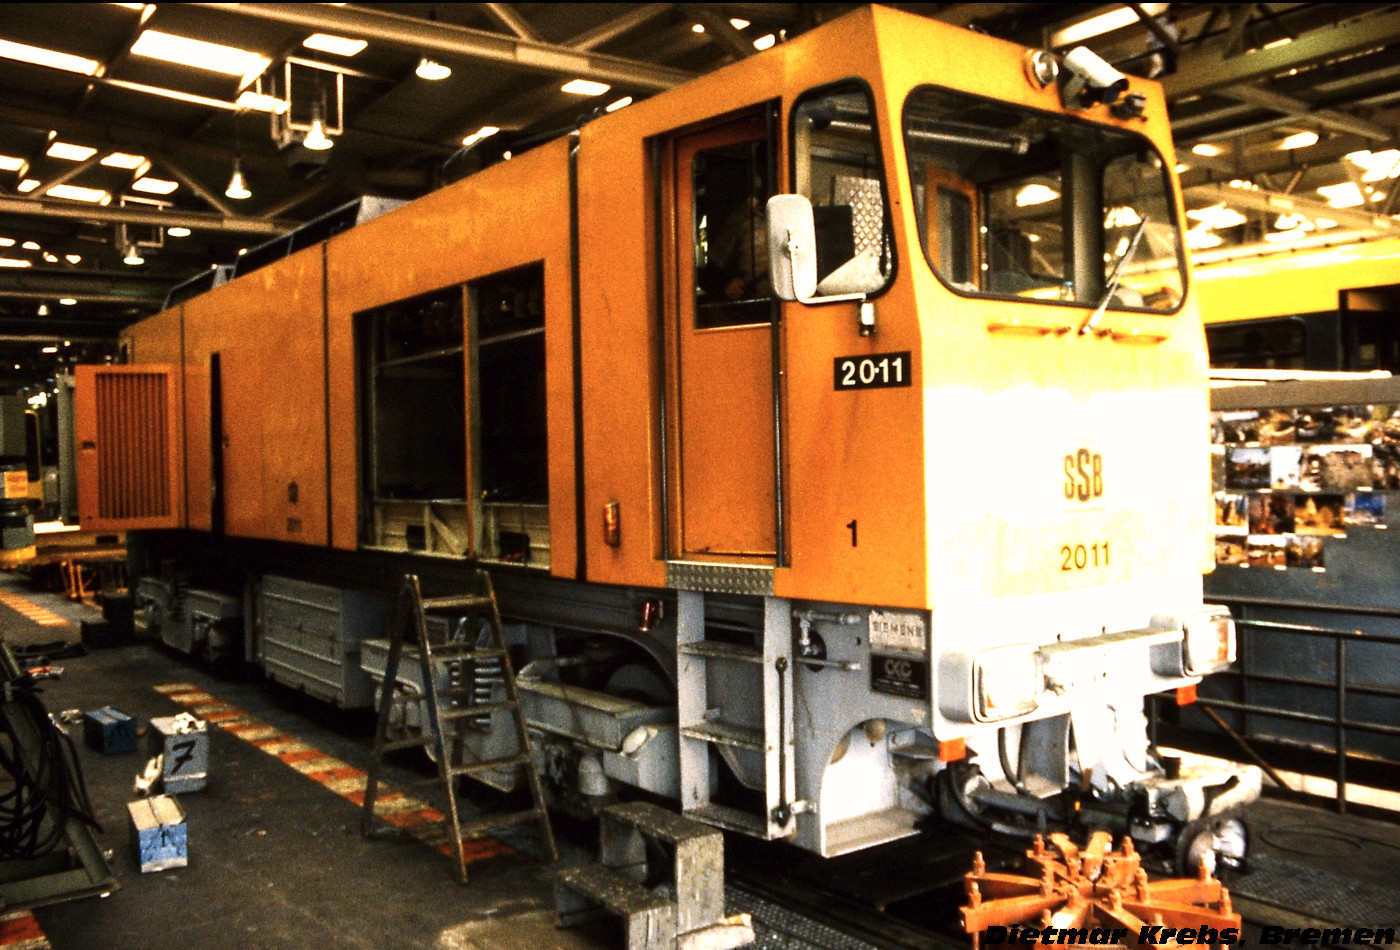 4-axle service Locomotive #2011